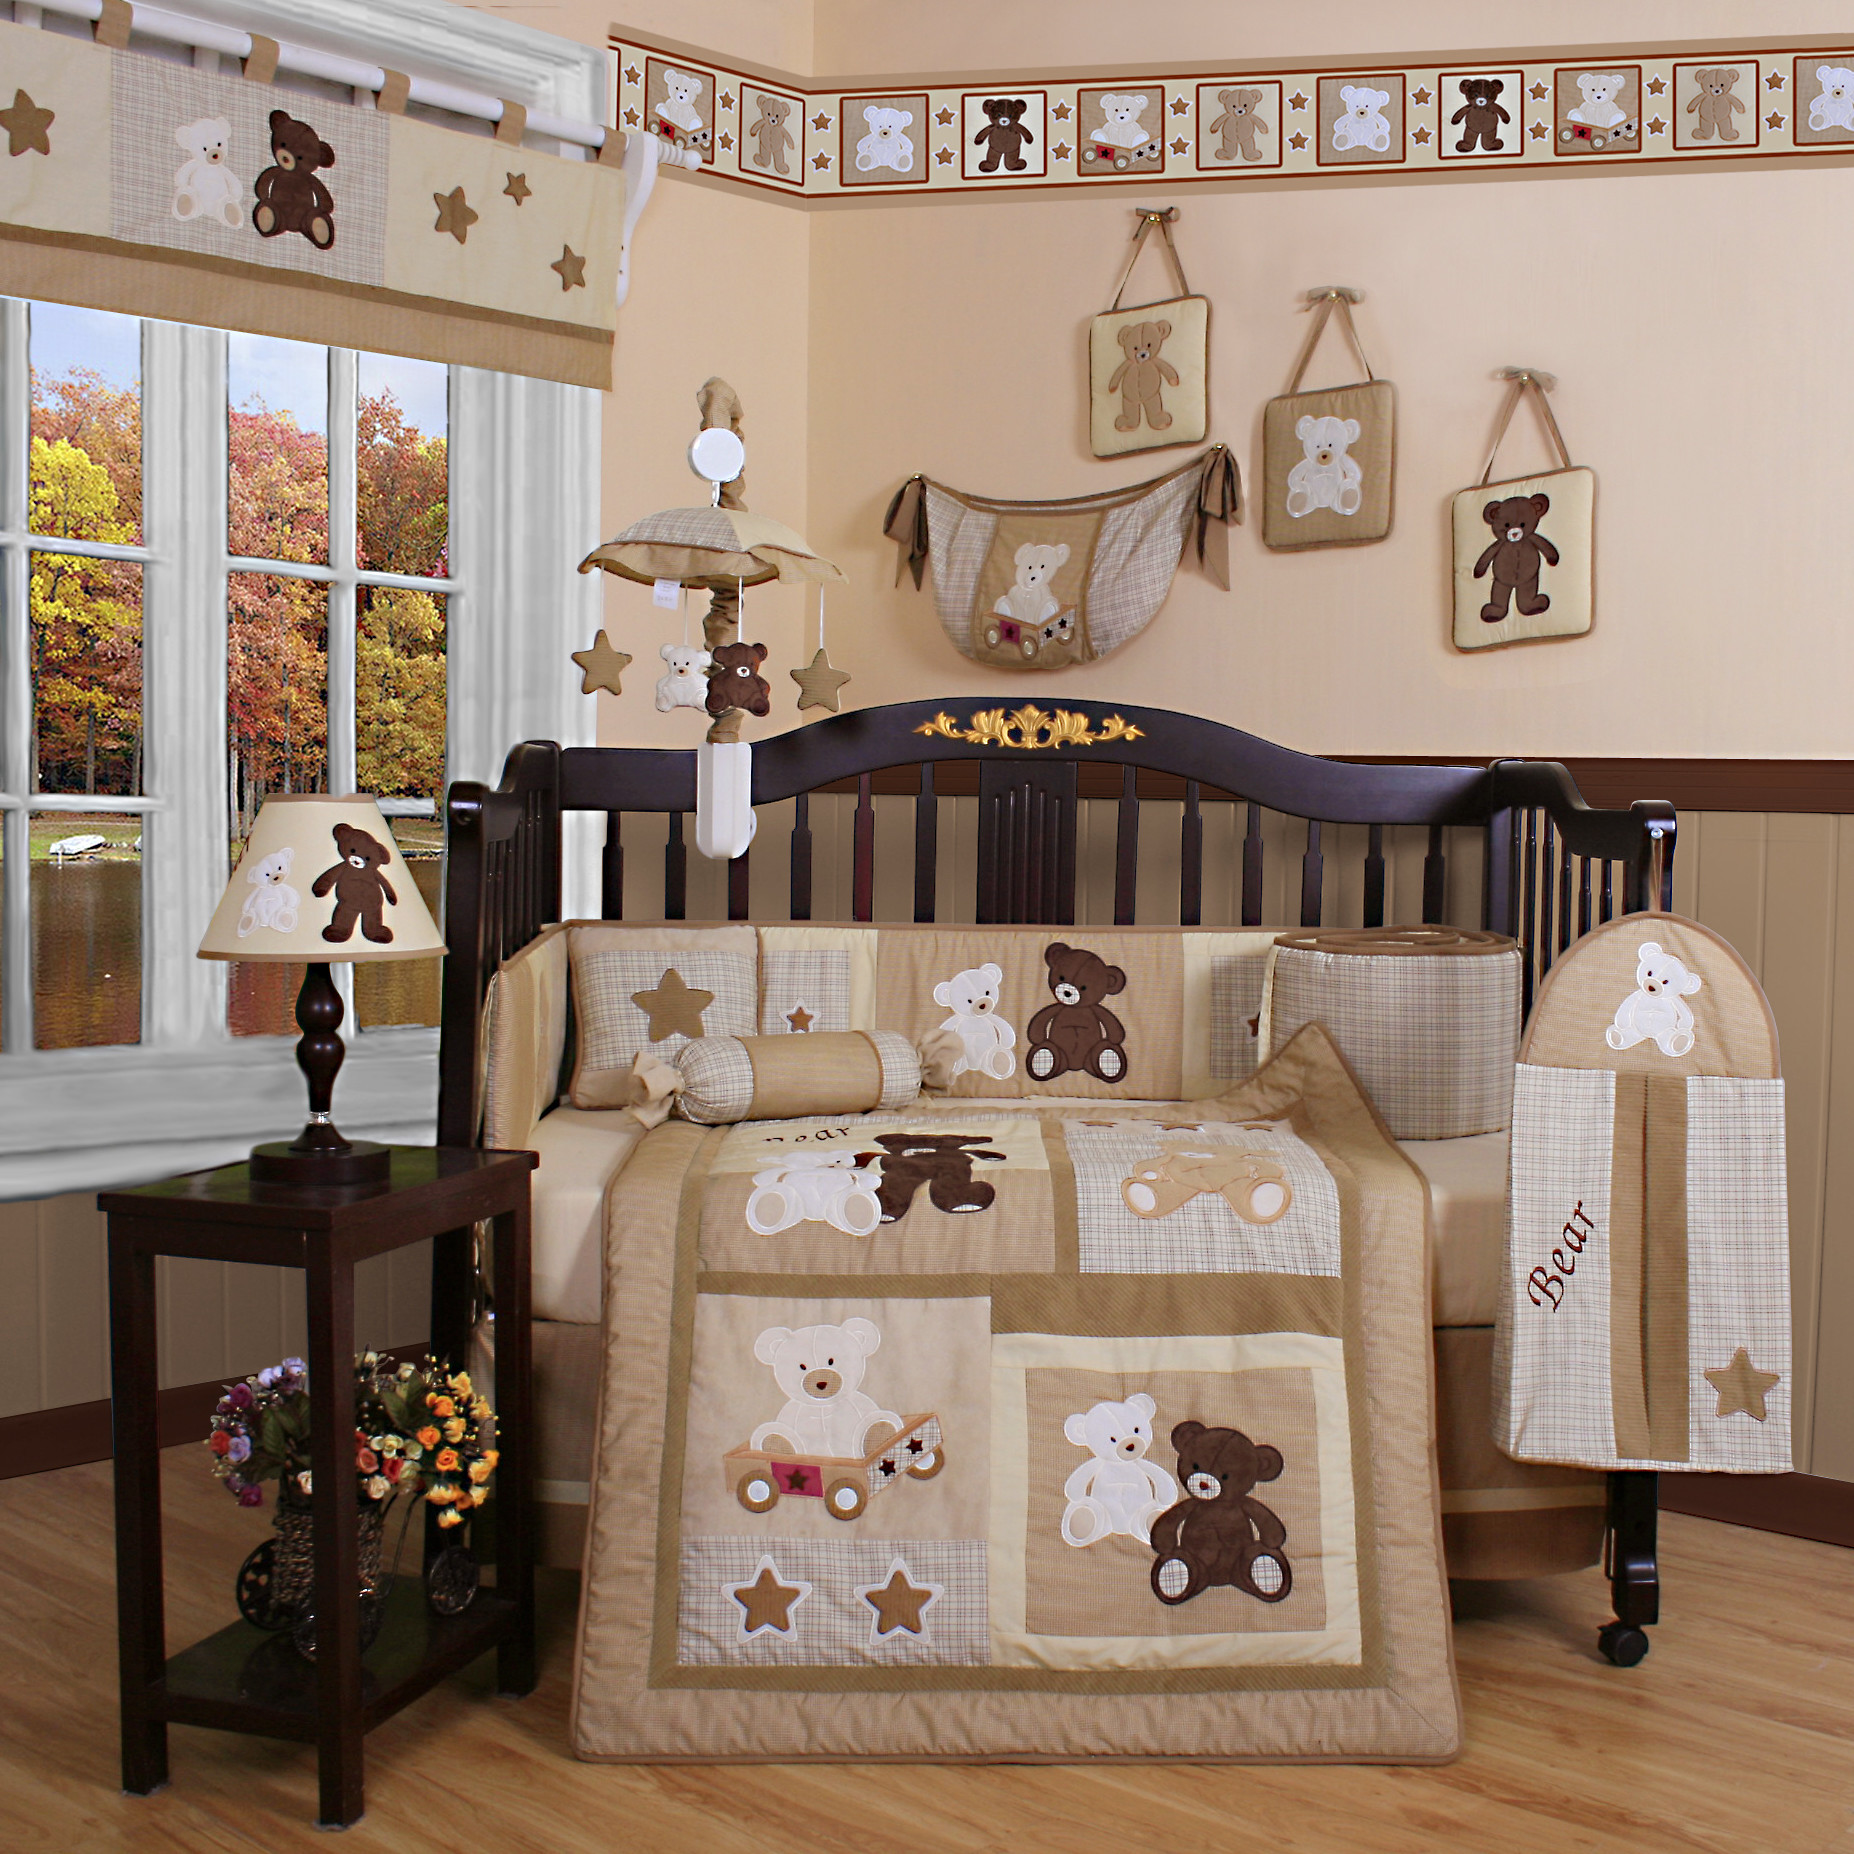 Baby Boy Crib Decoration Ideas
 Baby Boy Themes For Nursery – HomesFeed